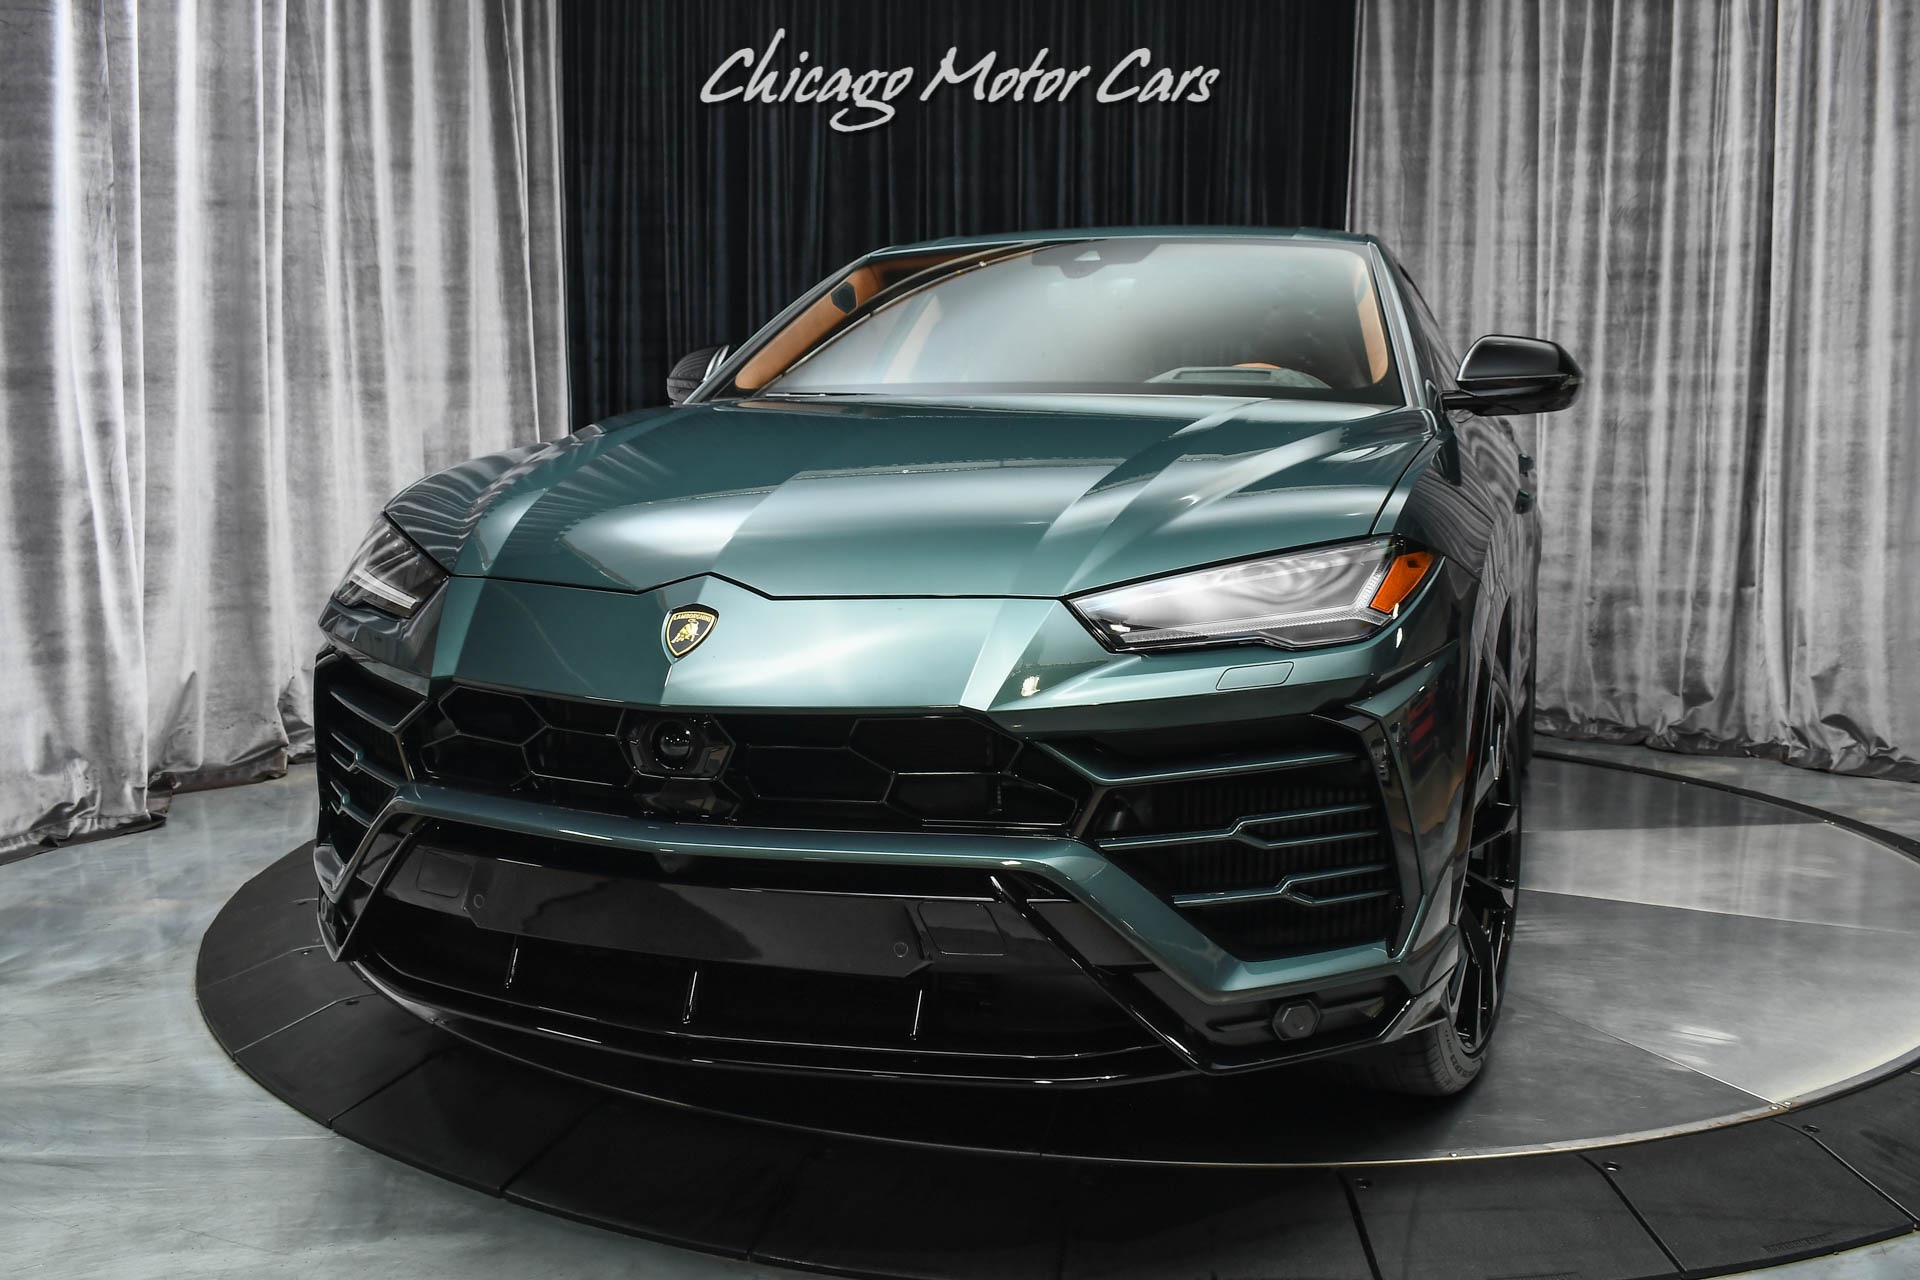 Used-2021-Lamborghini-Urus-SUV-Rare-Color-Combo-Terra-Asia-Interior-ONLY-1600-Miles